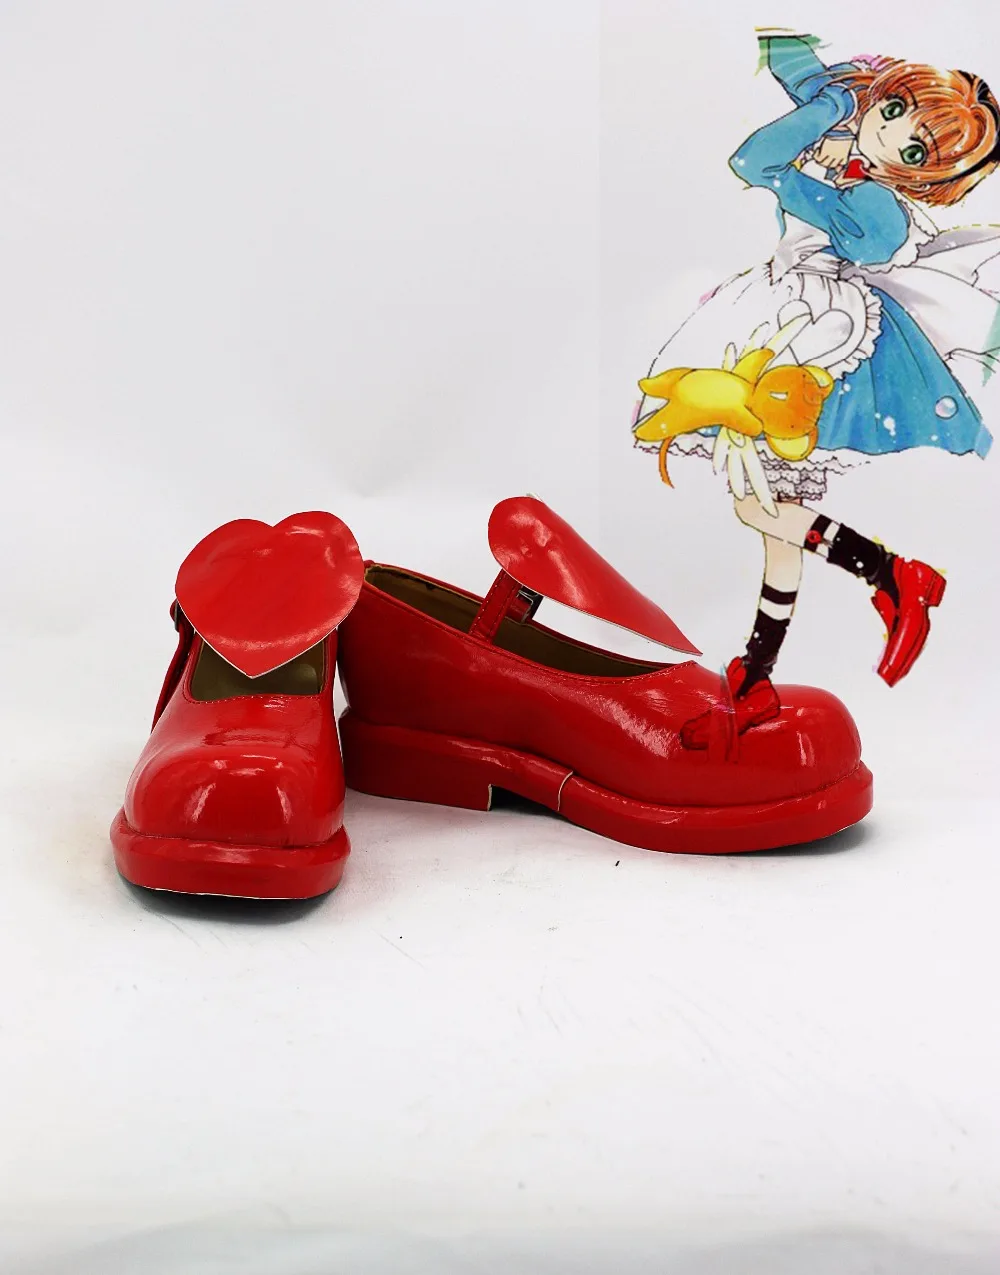 Cardcaptor Sakura Kinomoto Сакура ботинки для костюмированной вечеринки вечерняя Обувь с рисунком из аниме индивидуальный заказ